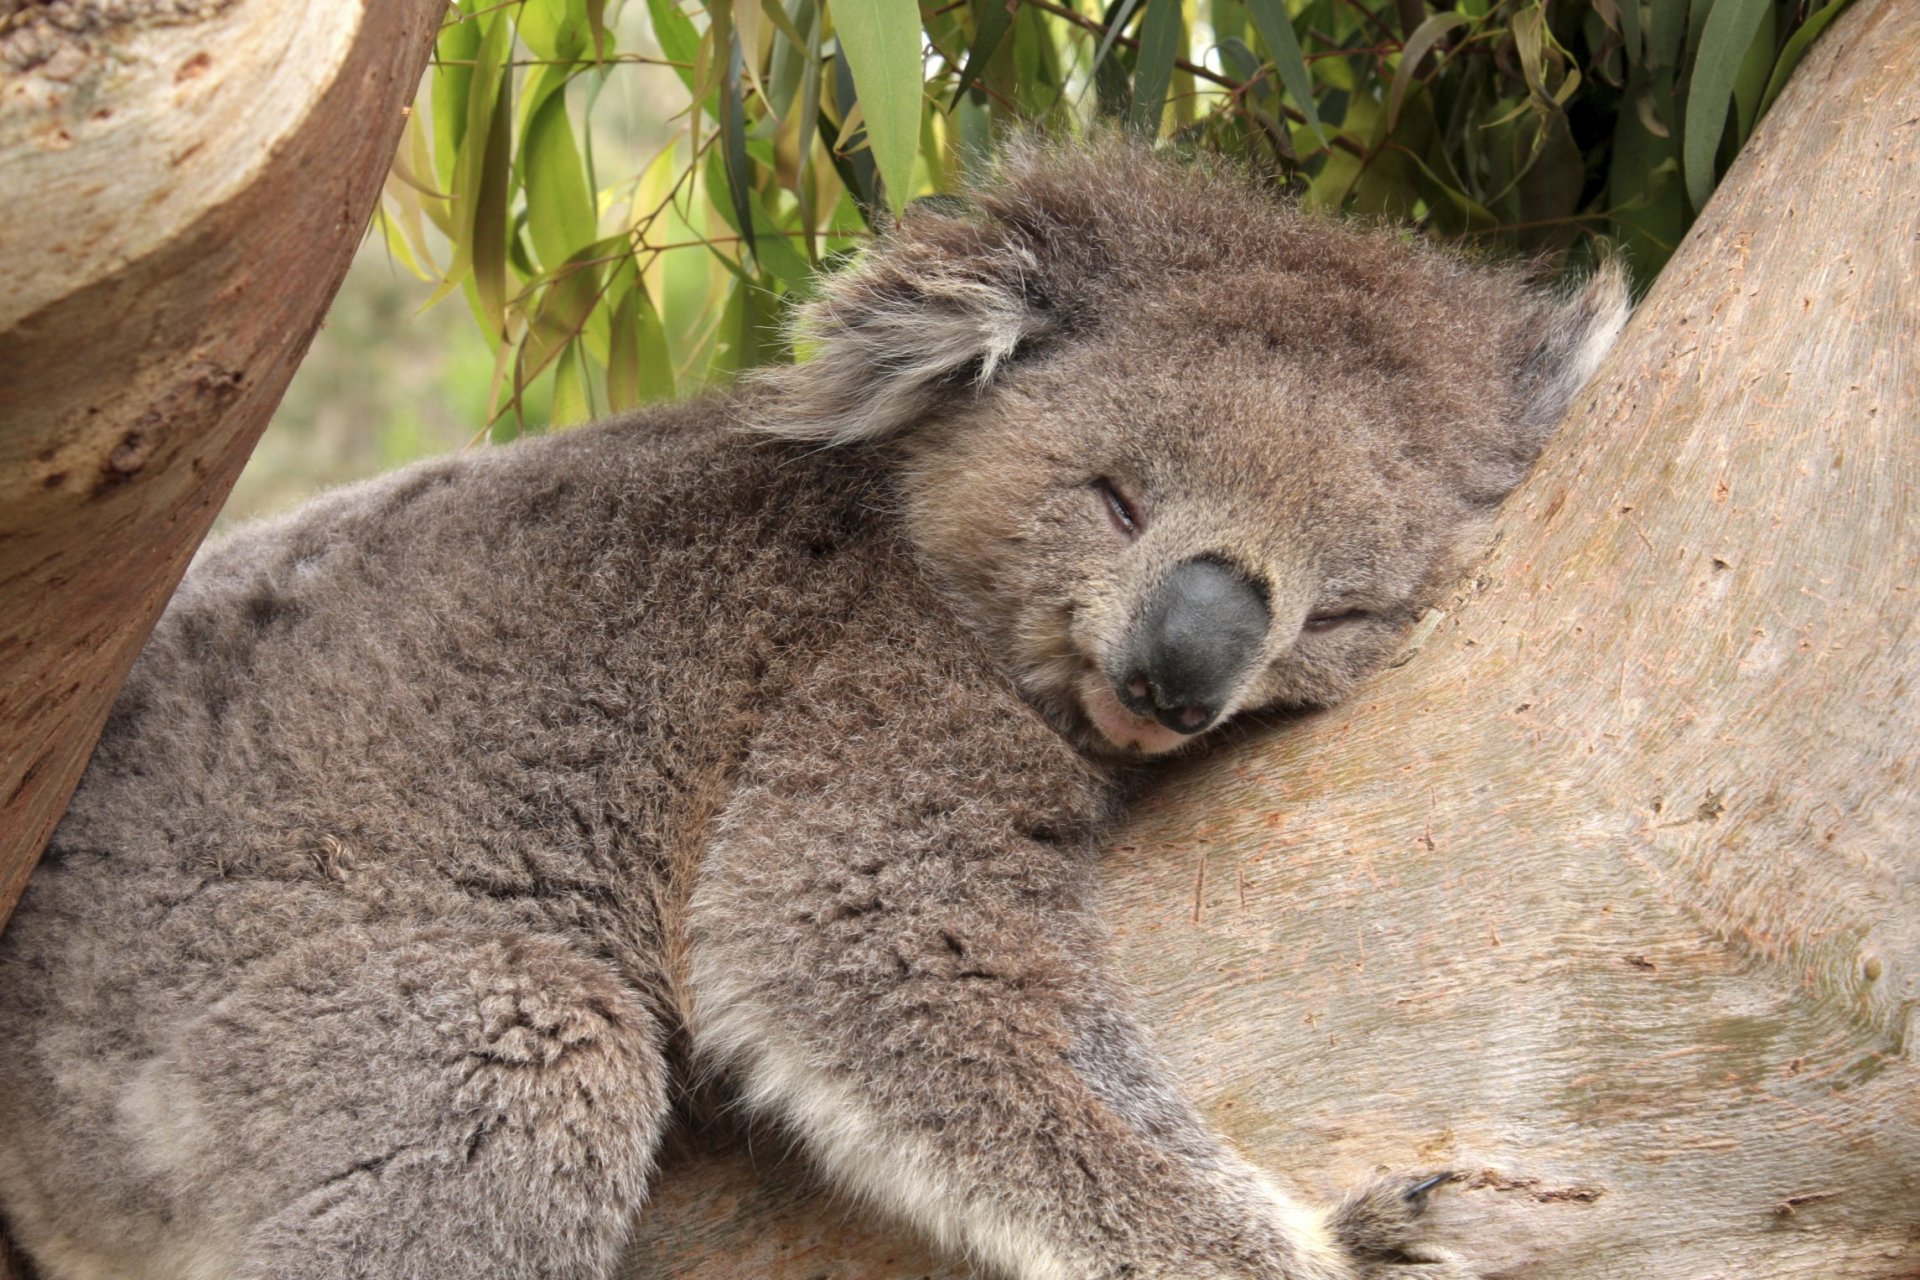 A Koala Sleep 20 Hours a Day